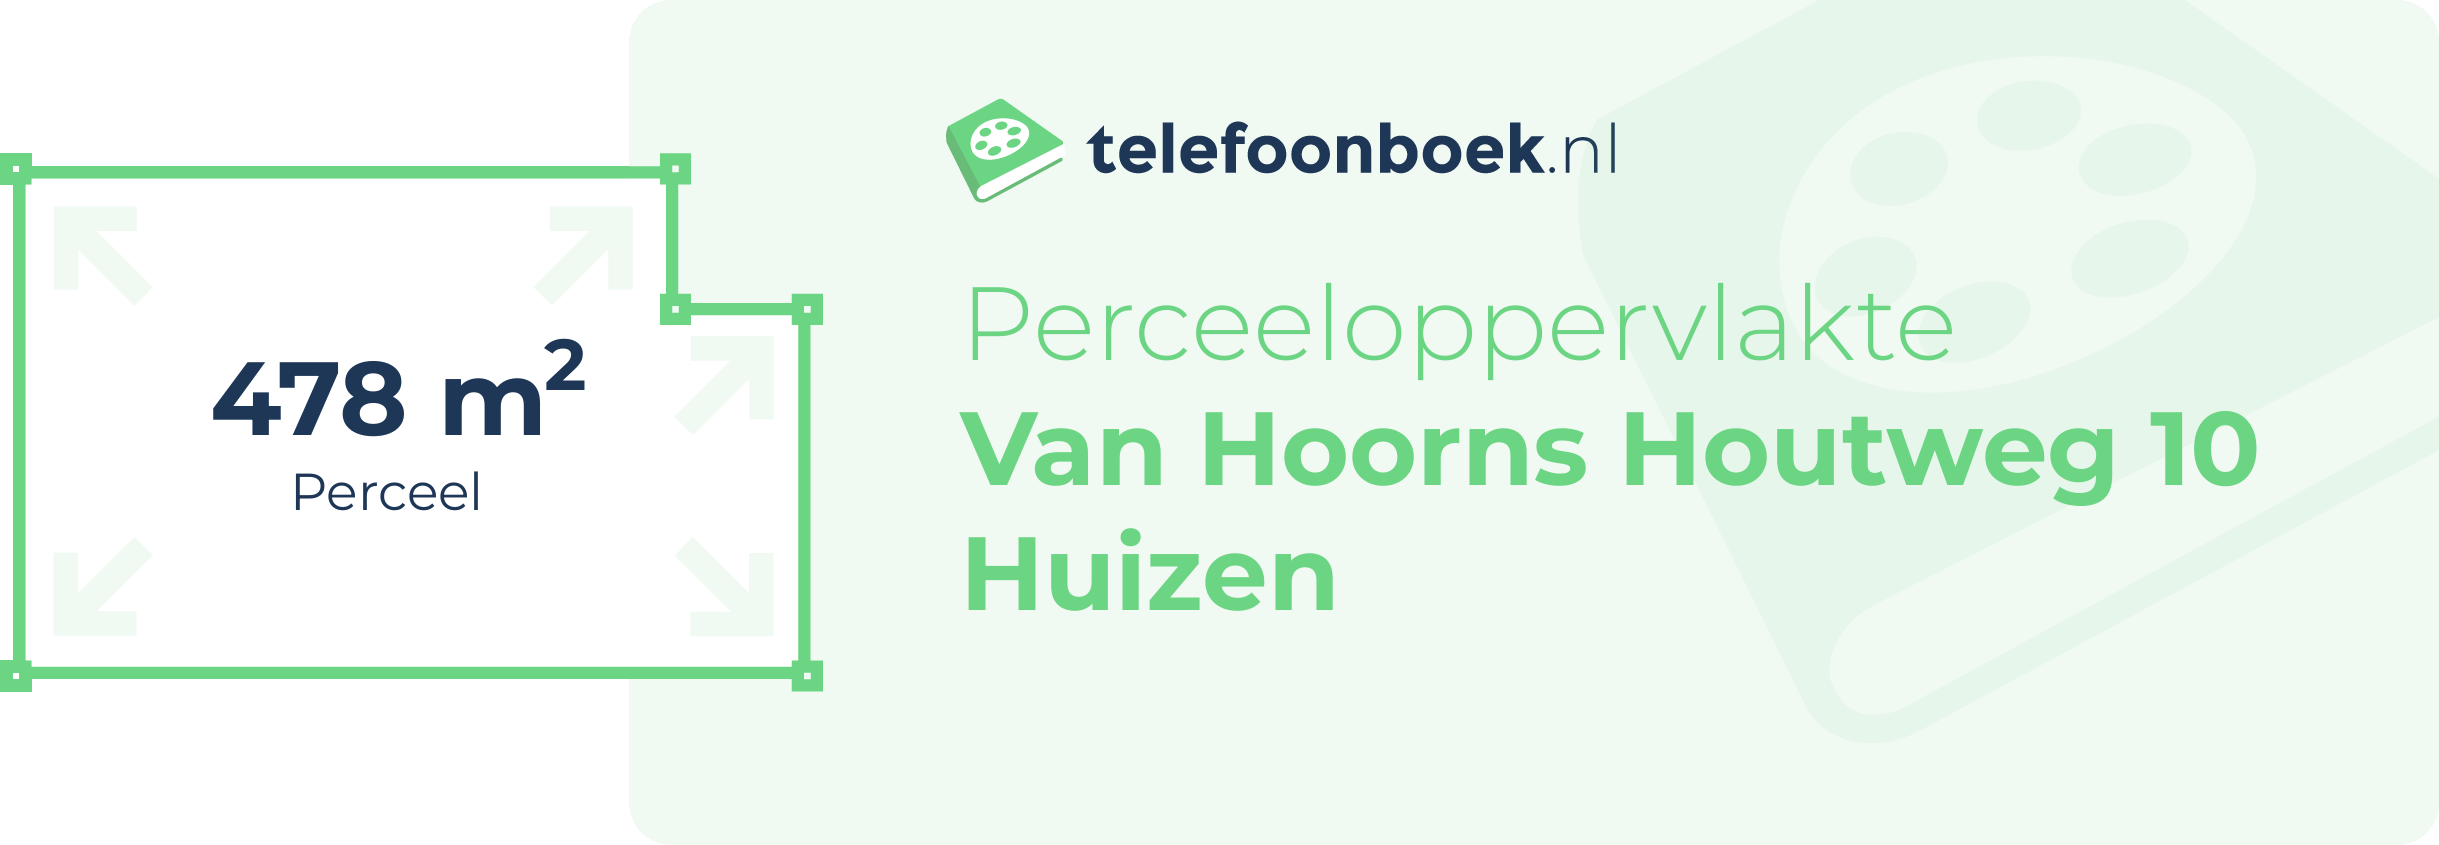 Perceeloppervlakte Van Hoorns Houtweg 10 Huizen